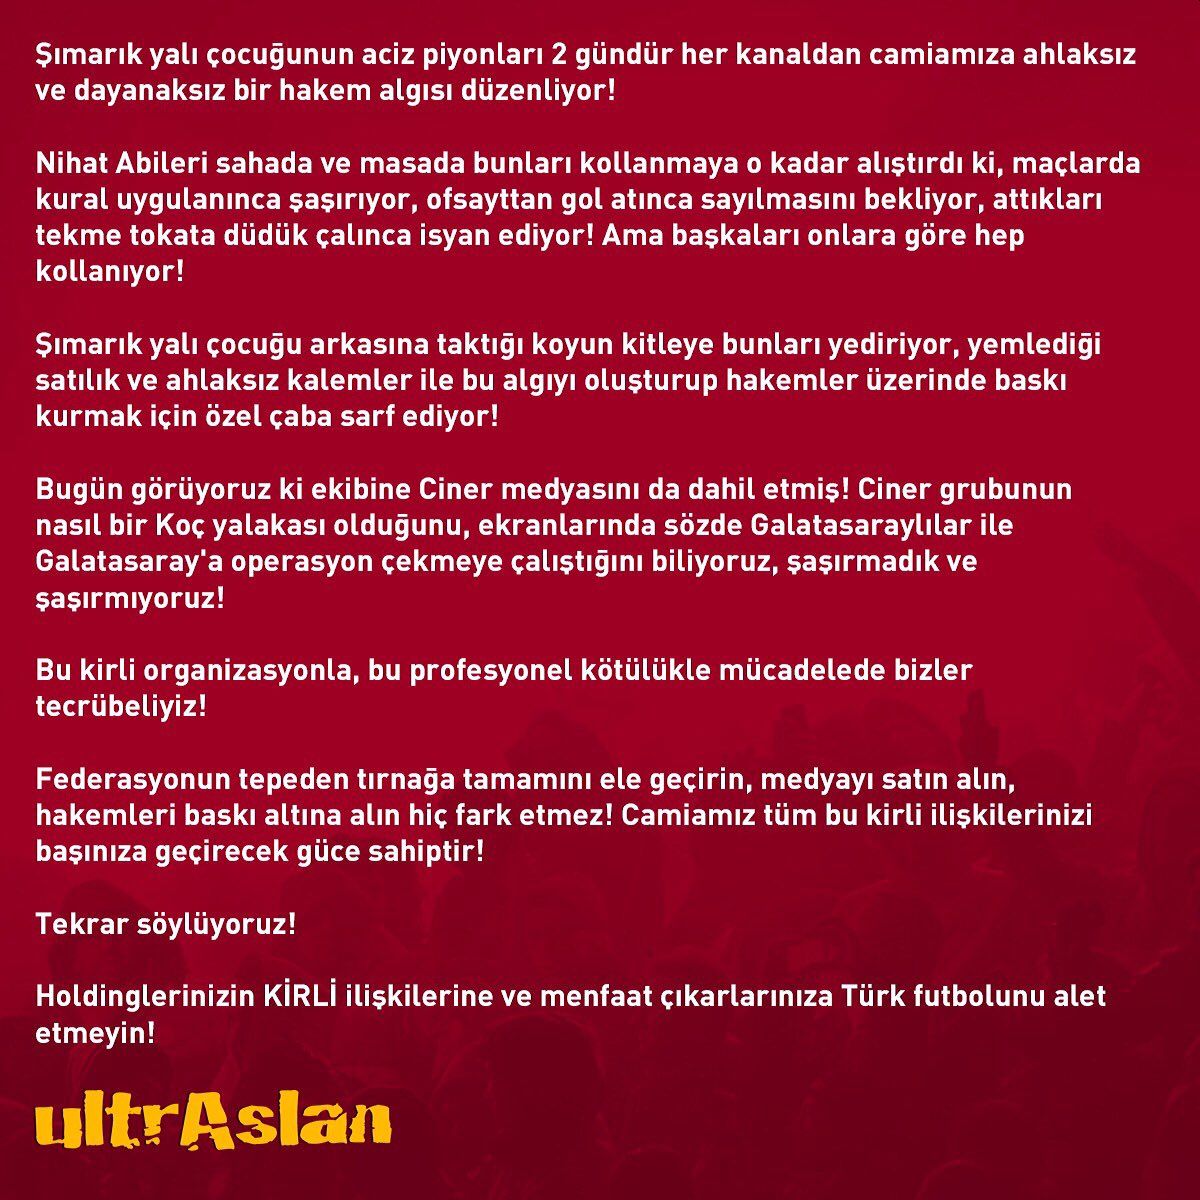 UltrAslan'dan, Fenerbahçe Başkanı Ali Koç'a Ağır Suçlama!